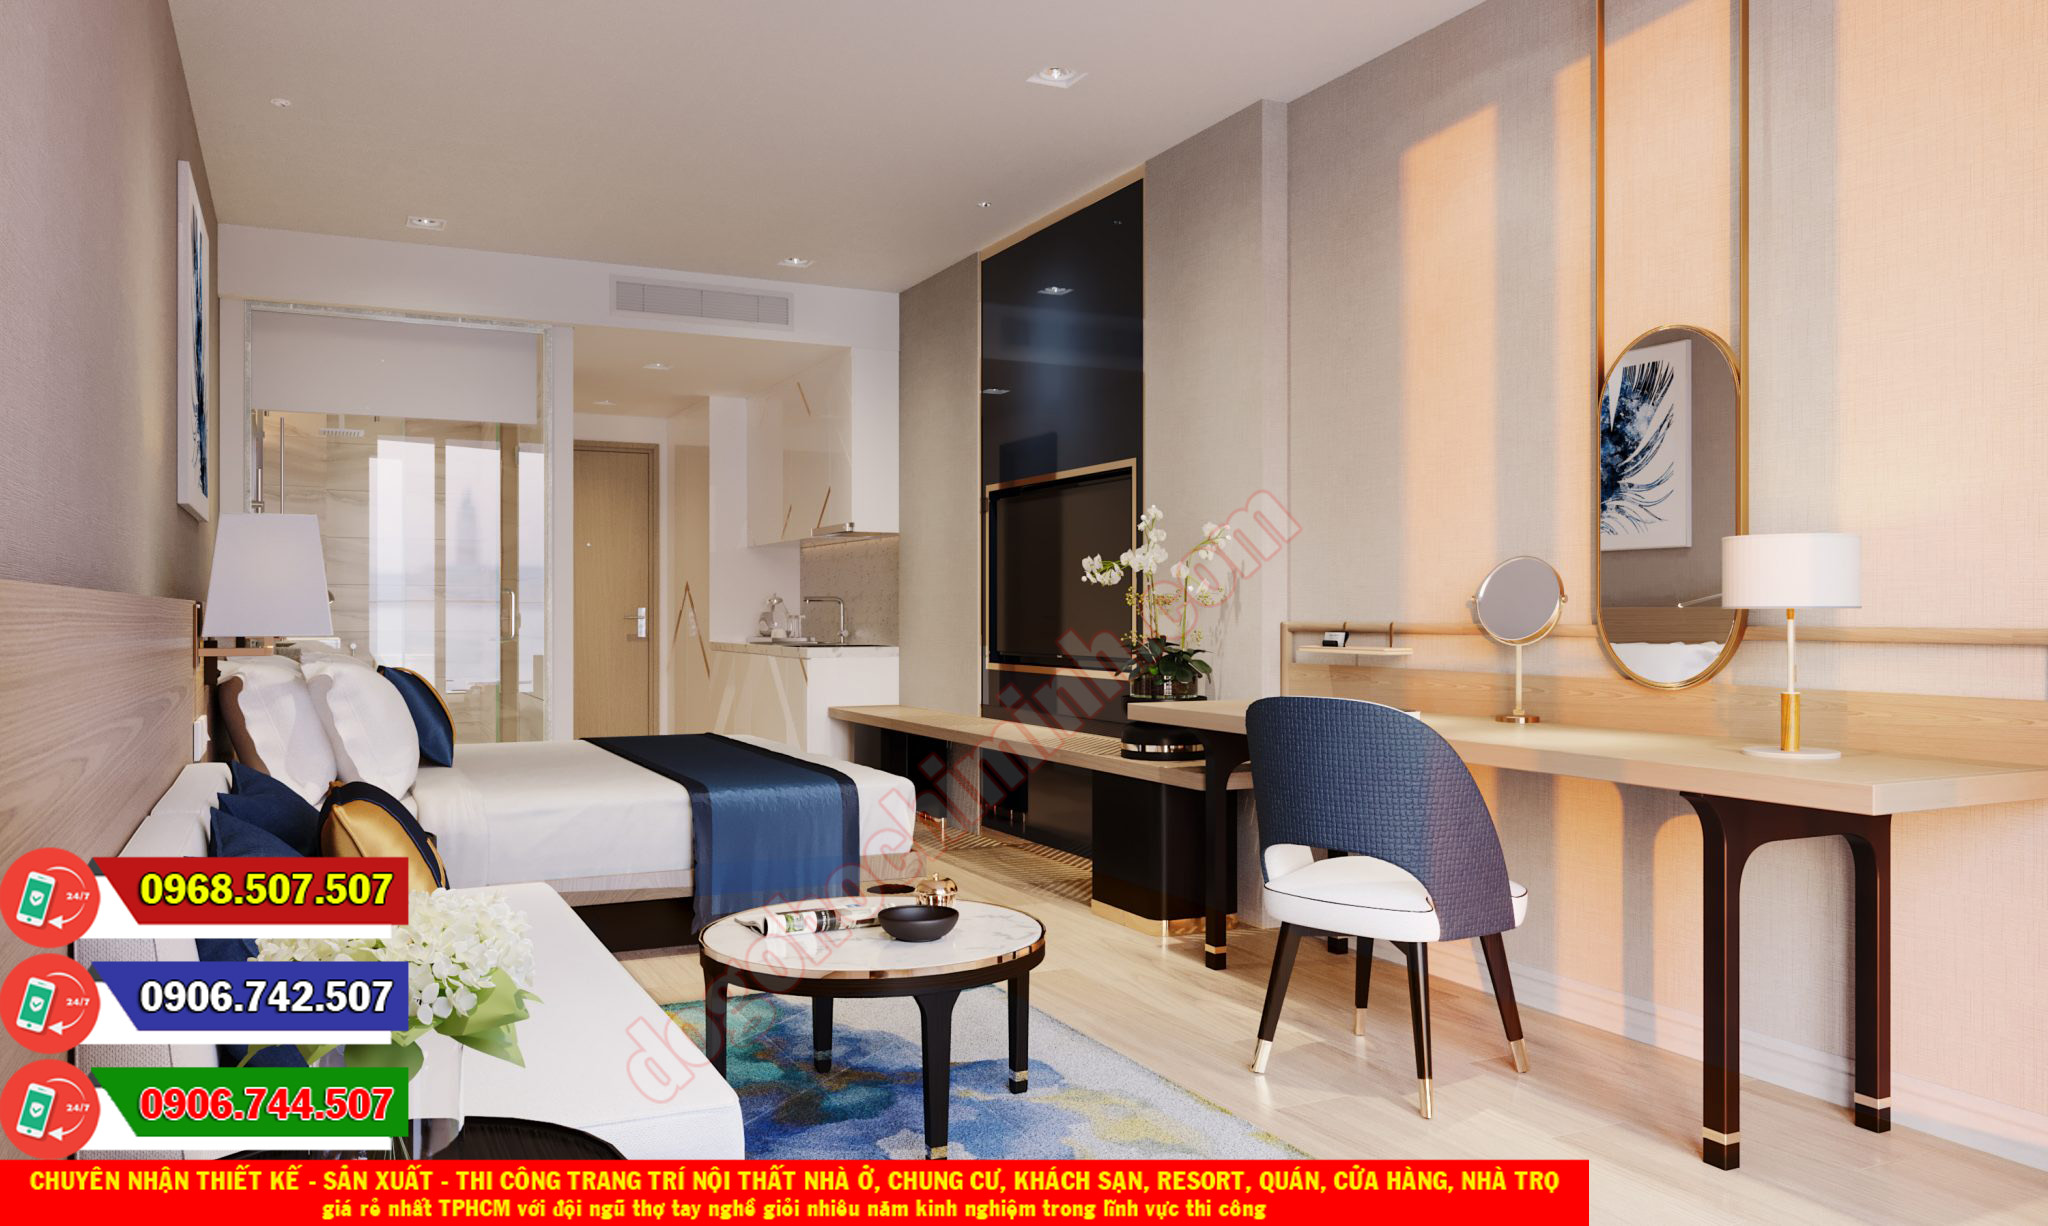 Thi công đồ gỗ nội thất khách sạn resort giá rẻ nhất Phước Thạnh TPHCM